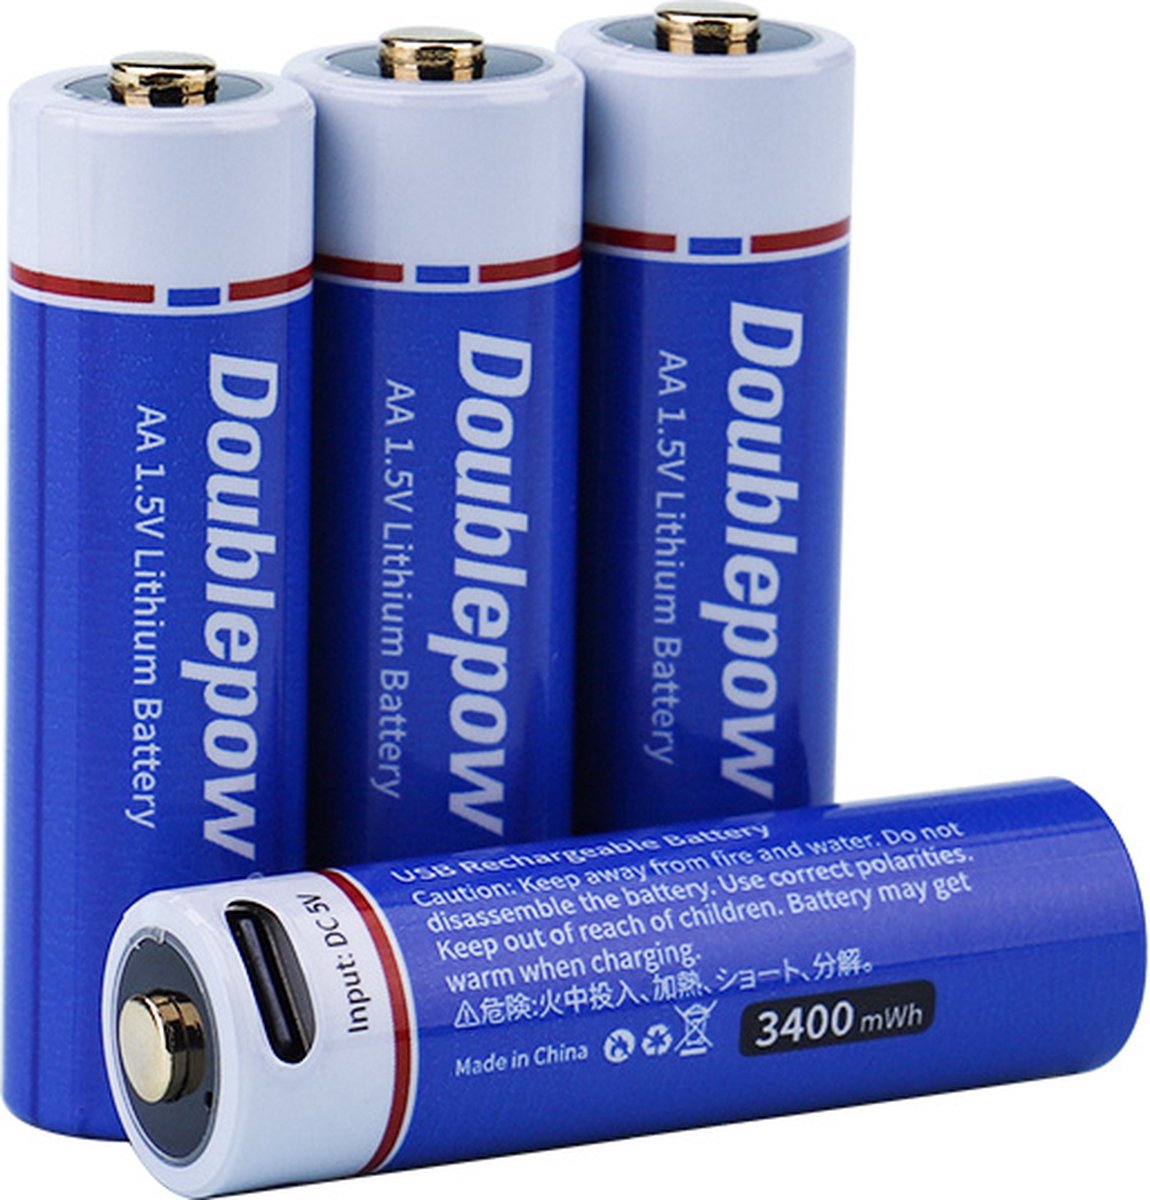 MaxiQualis USB Oplaadbare Li-ion AA Batterij 3400mWh - Marktleider Hoge Capaciteit - AA Batterijen - Oplaadbaar via USB-C (4 Stuks)